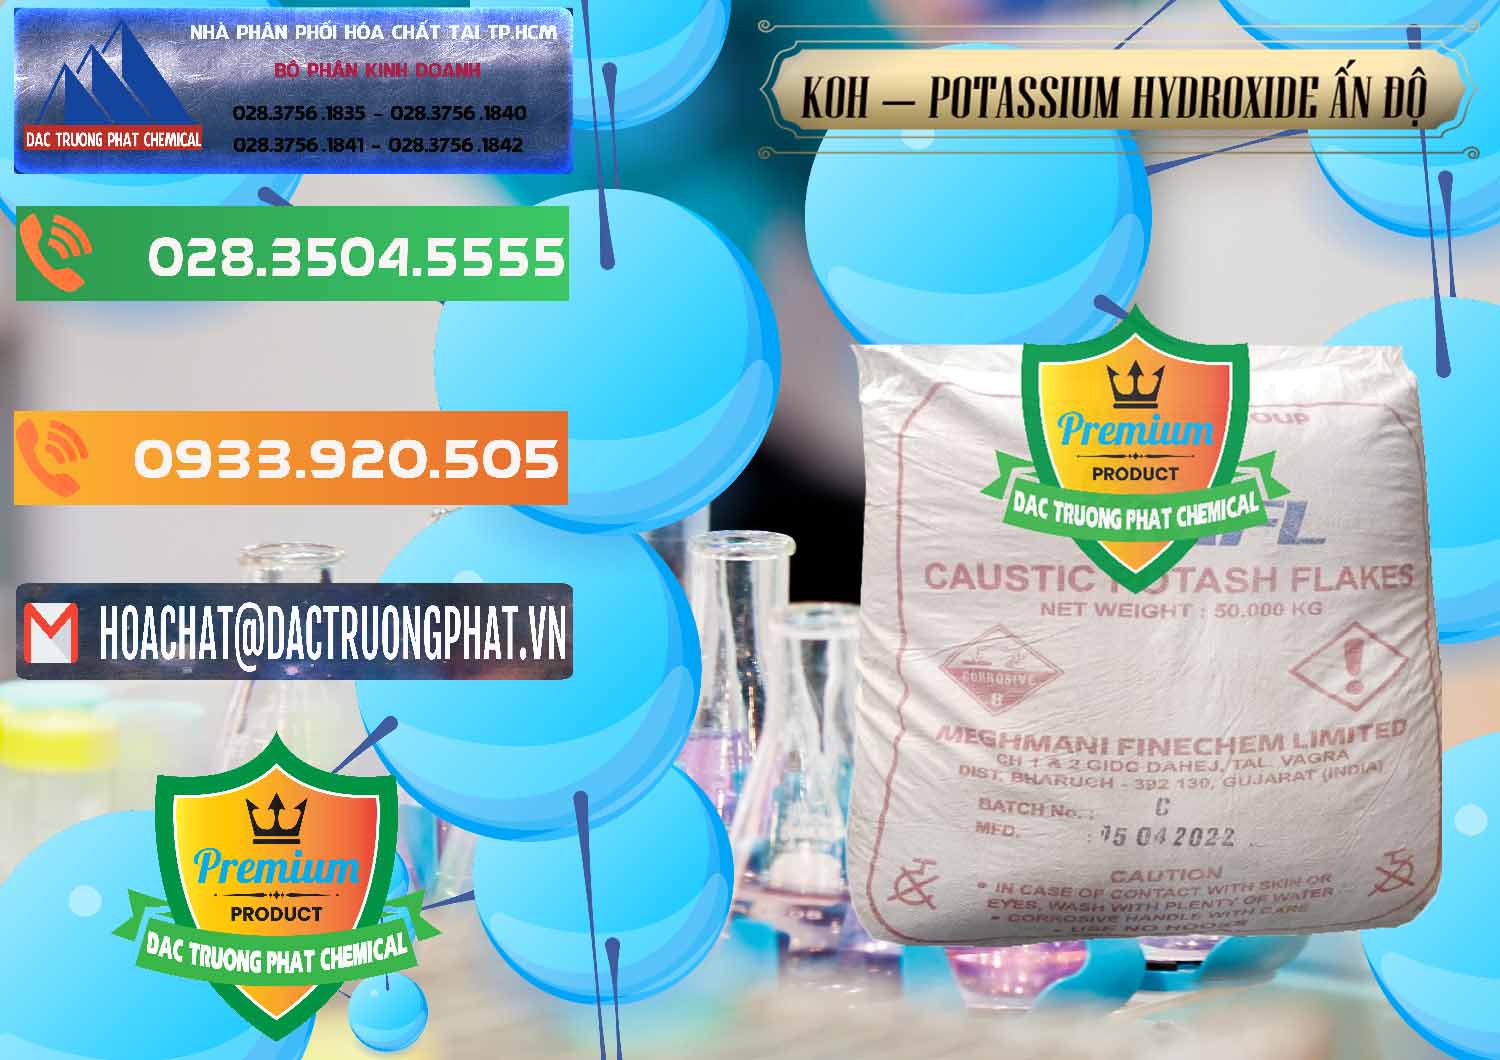 Đơn vị bán - cung cấp KOH ( 90%) – Potassium Hydroxide Ấn Độ India - 0352 - Chuyên kinh doanh & cung cấp hóa chất tại TP.HCM - hoachatxulynuoc.com.vn